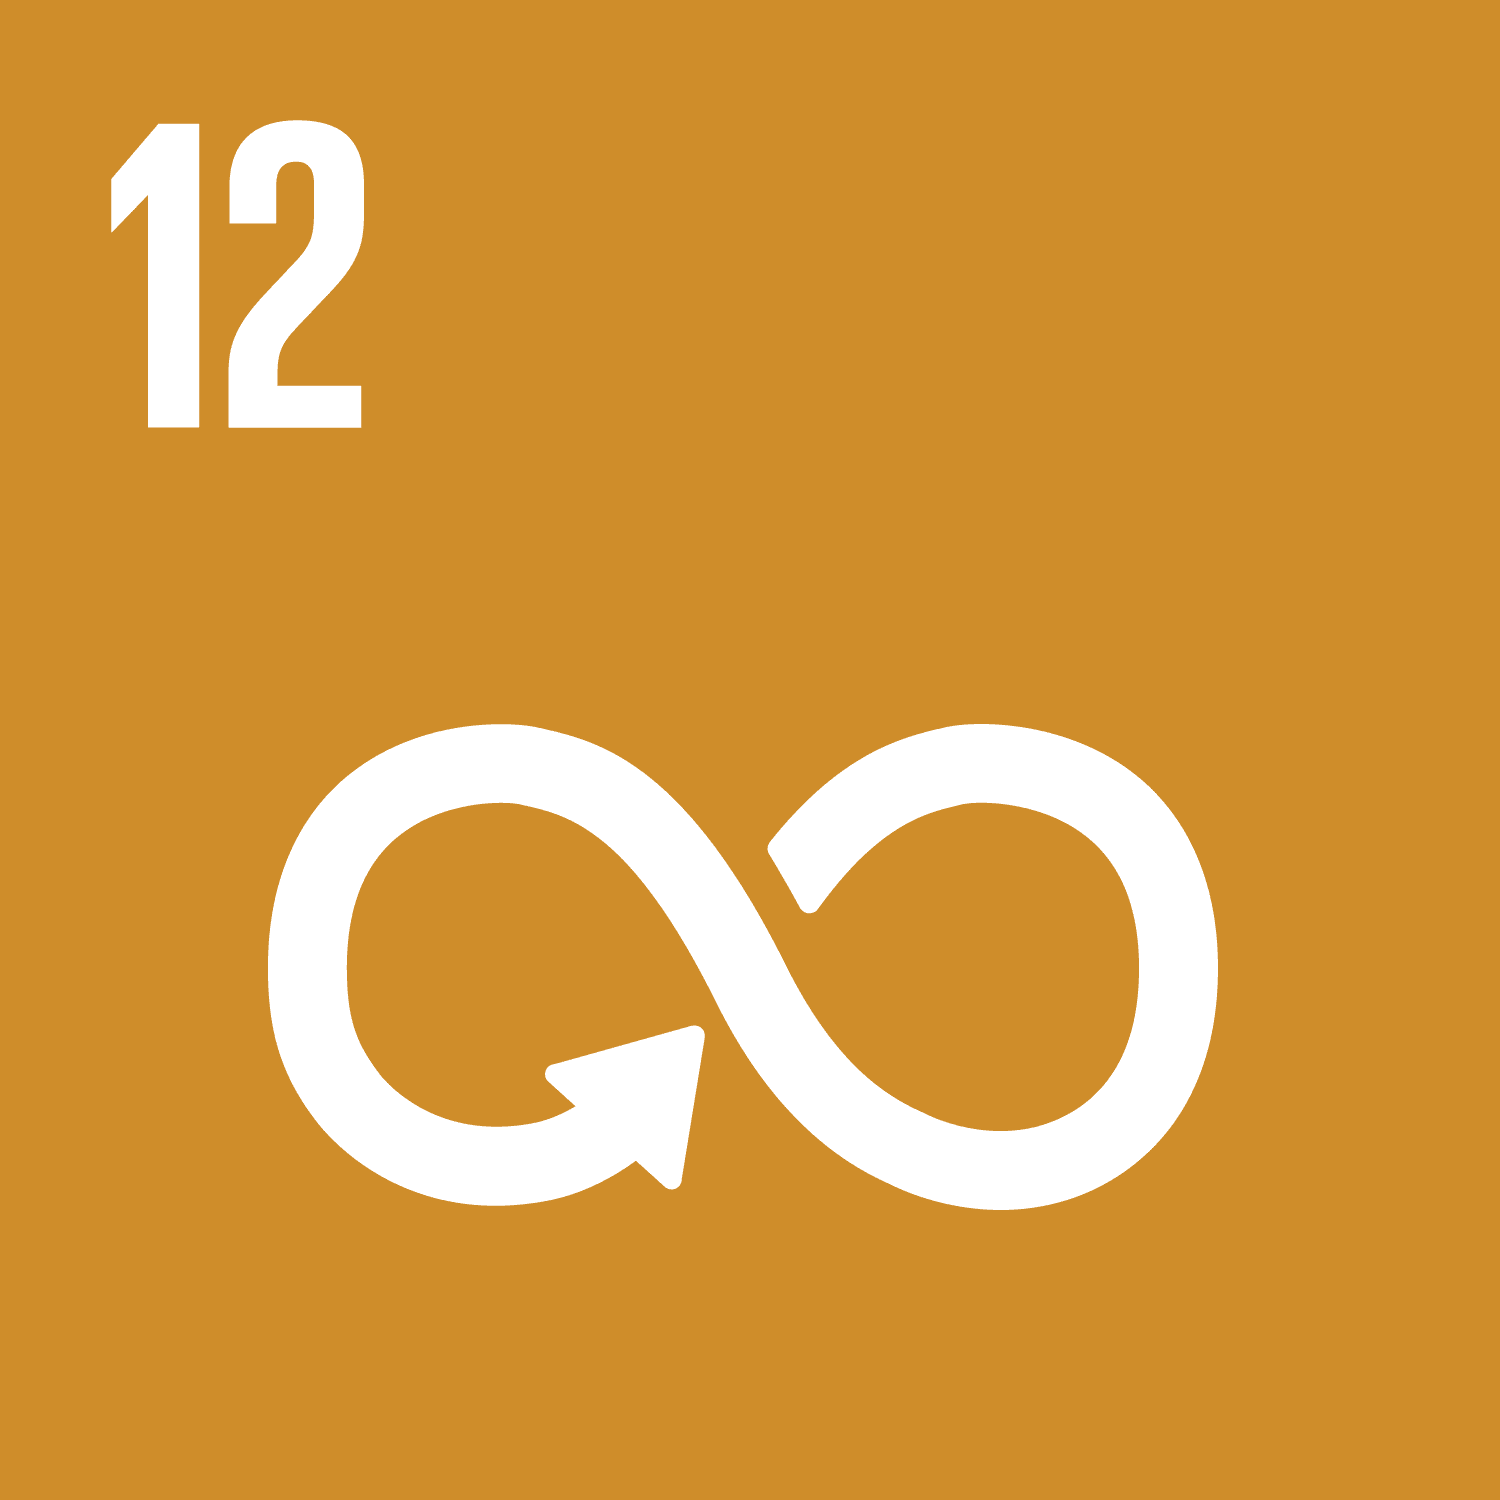 ODS 11. Cidades e comunidades sustentáveis.